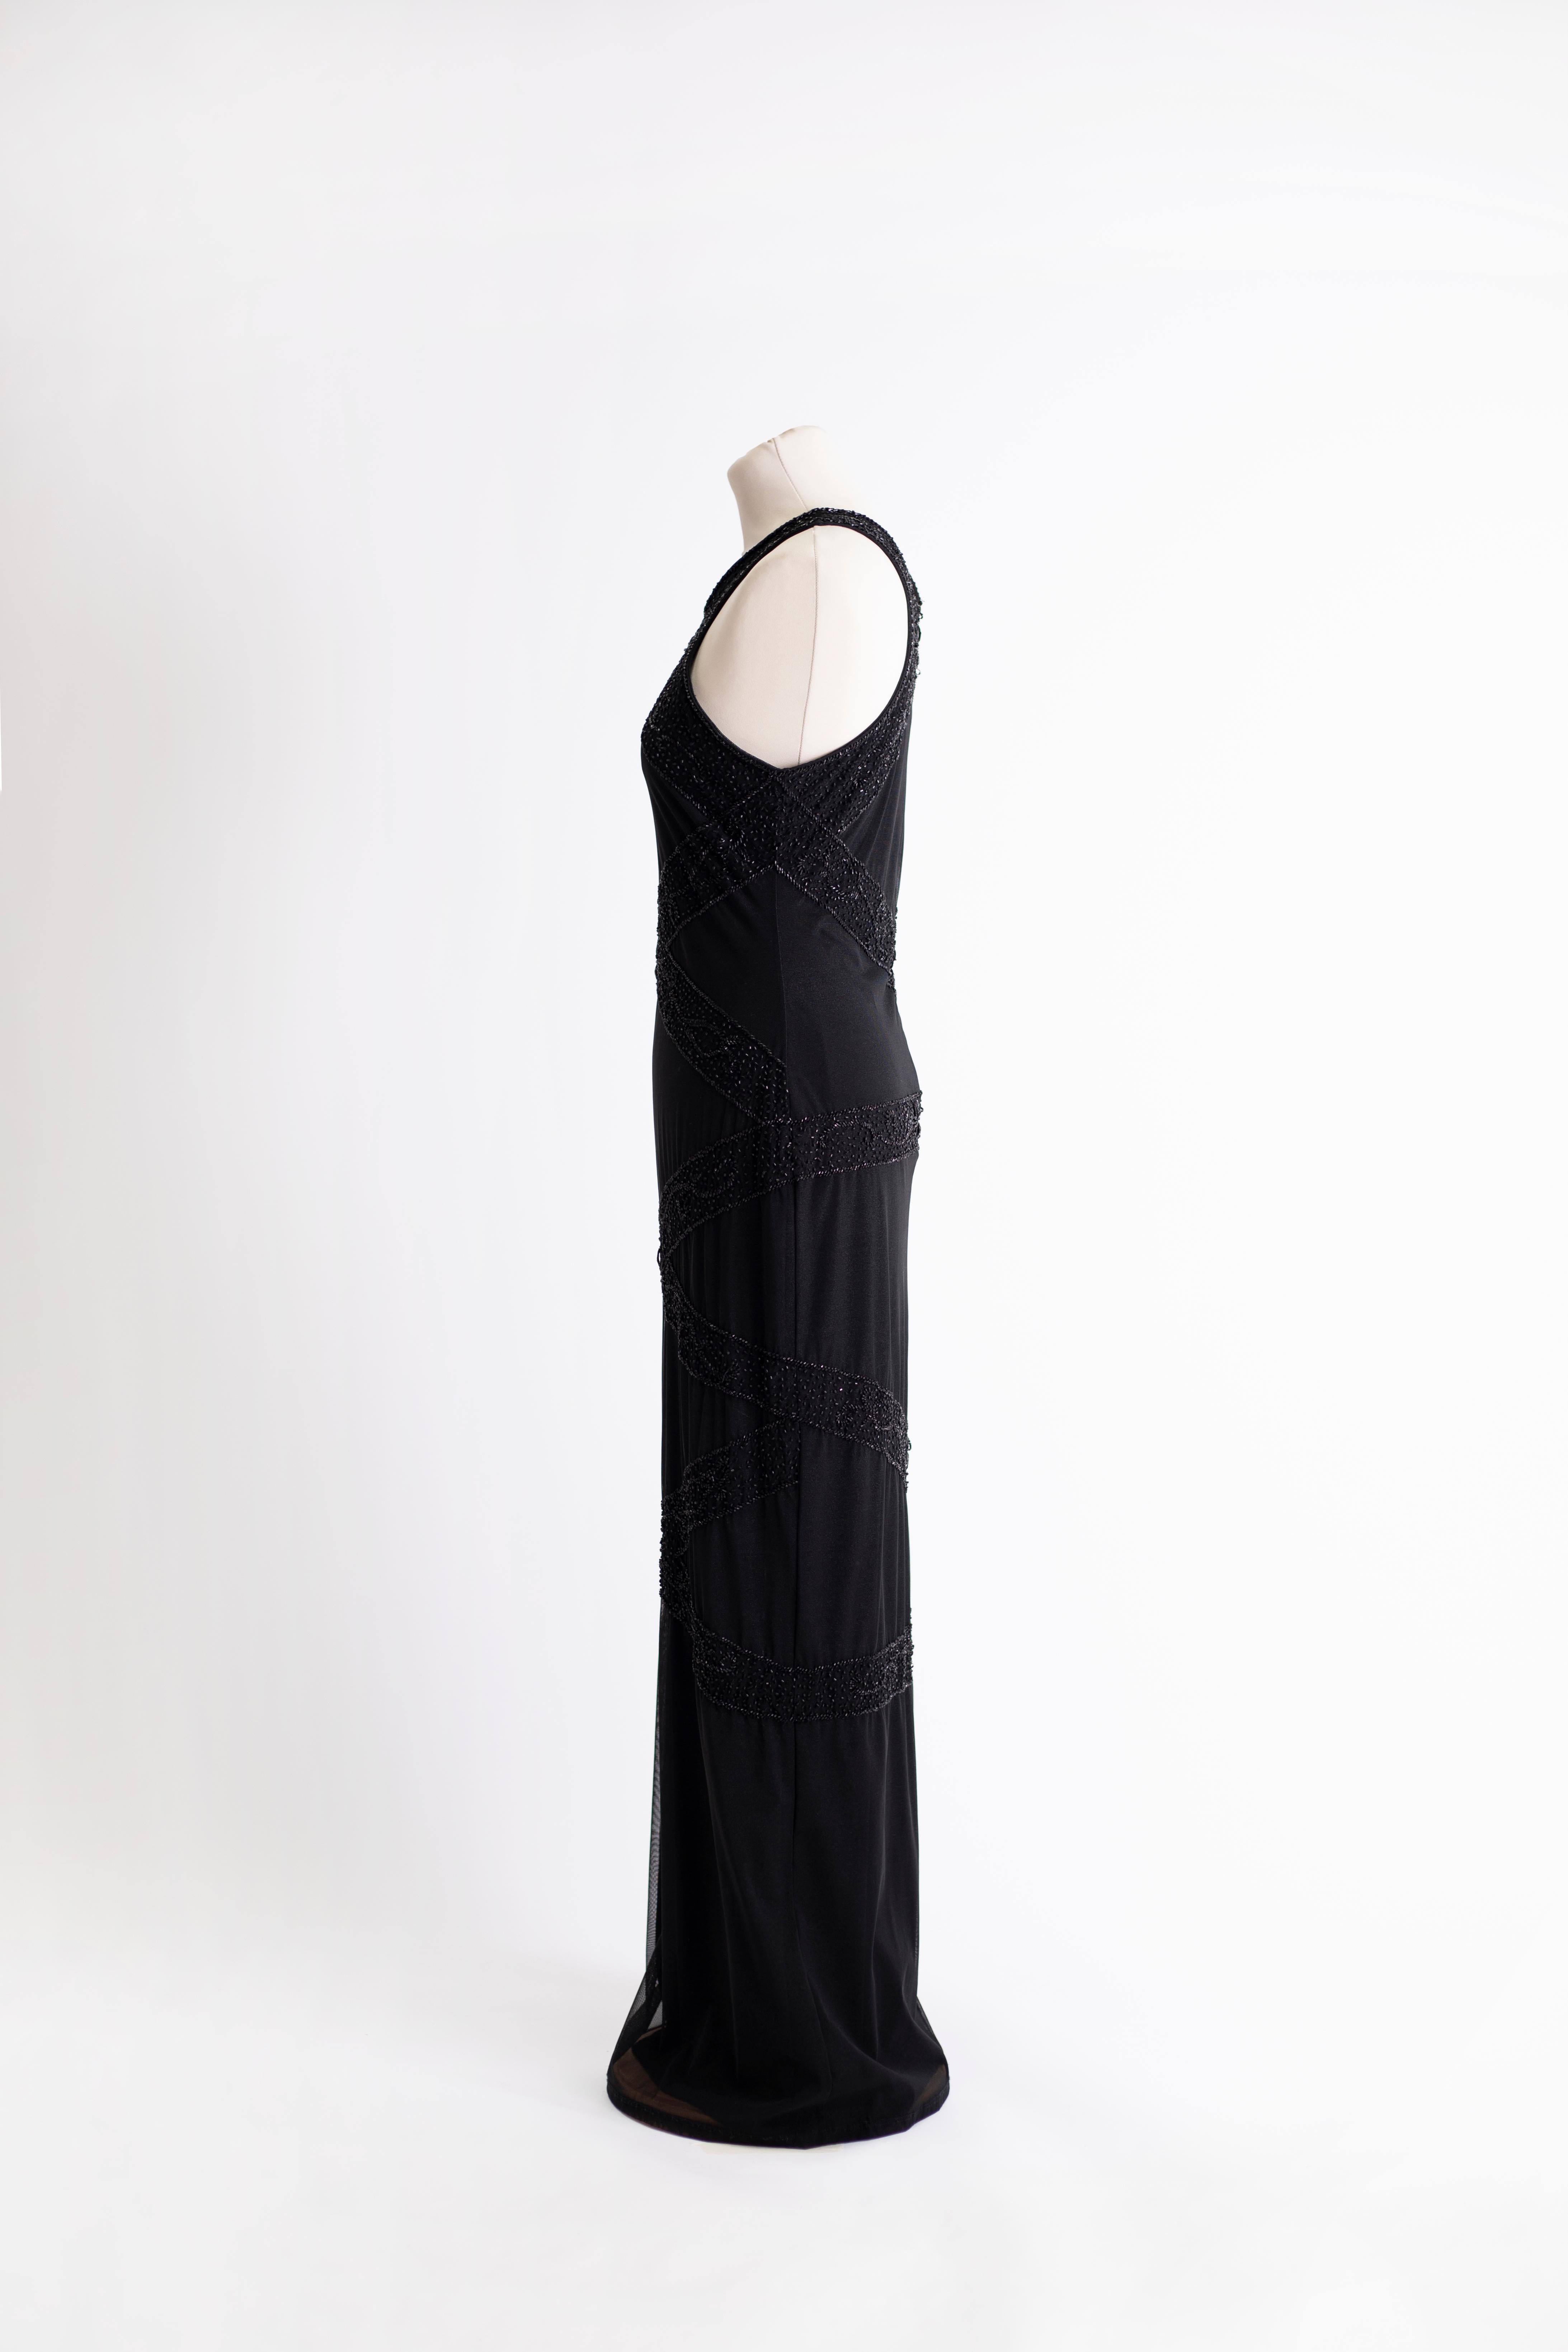 Longue robe noire avec col licou. Tissu extensible en polyester et spandex. Broderie perlée.

Taille : L

Étirer
Taille : 74 cm
Longueur : 143 cm
Poitrine : 86 cm